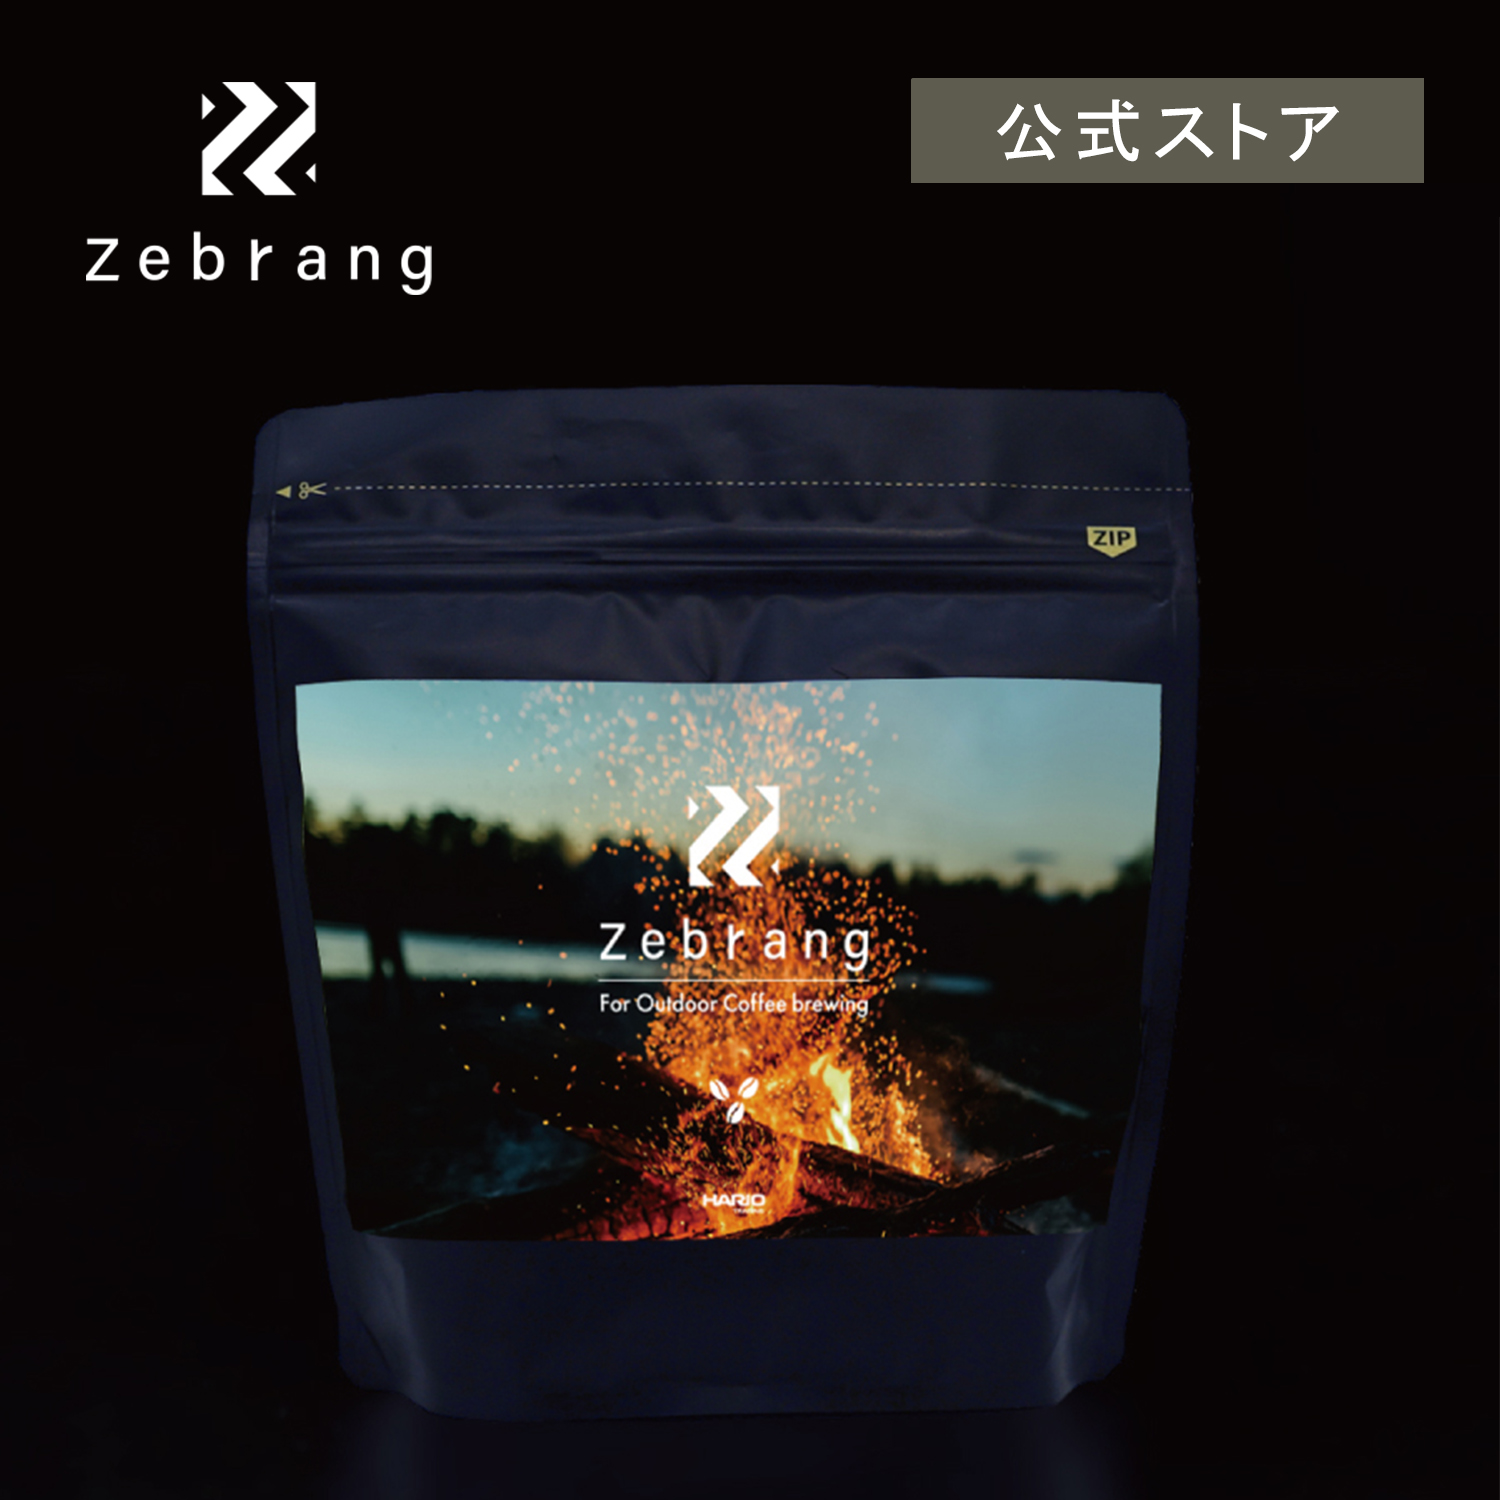 アウトドアコーヒー Zebrang コーヒー豆 アウトドア シングルオリジン ブレンド セール価格 推奨 ゼブラン